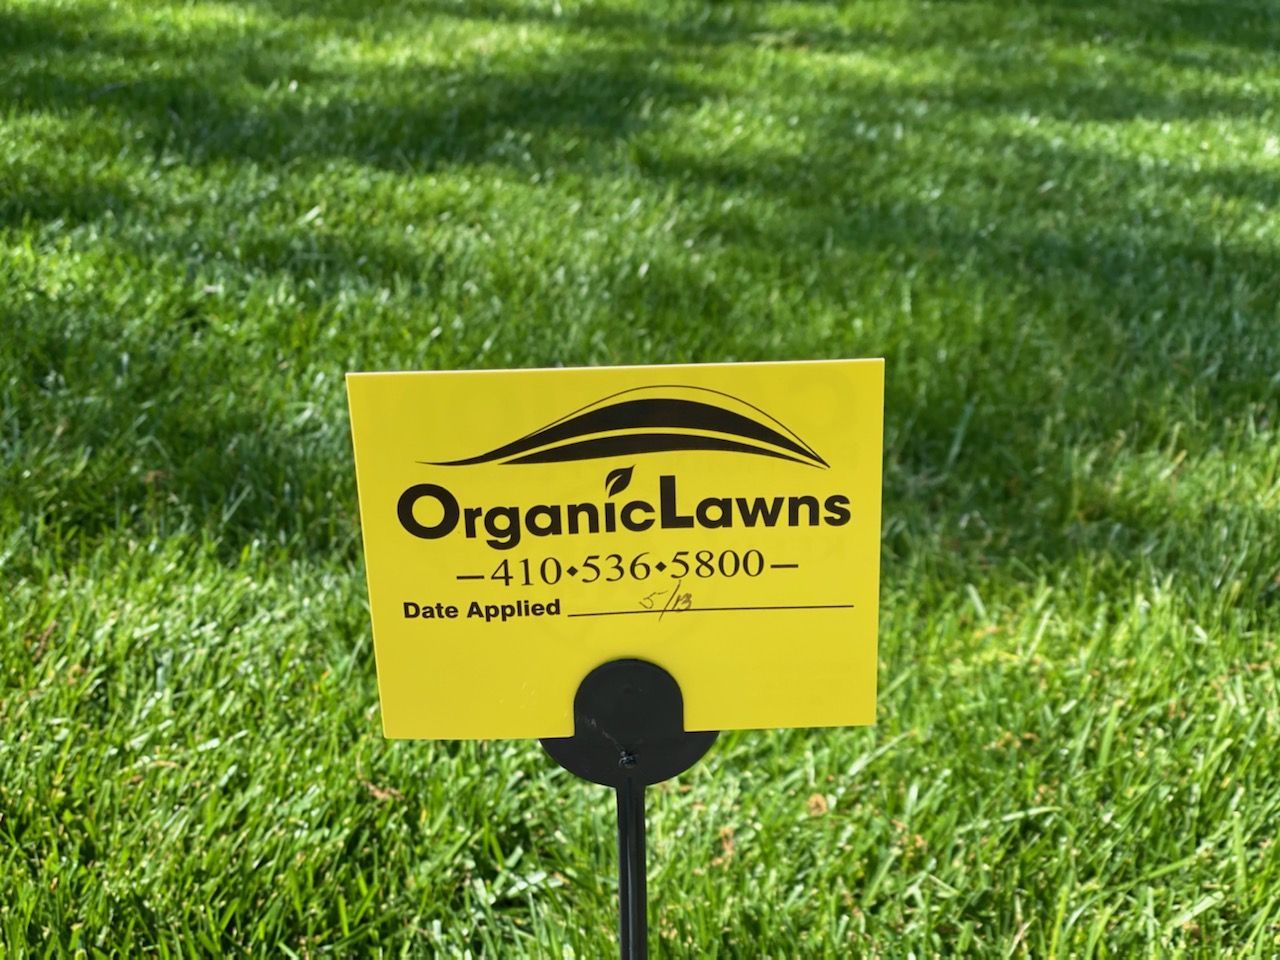 organic lawns date applied